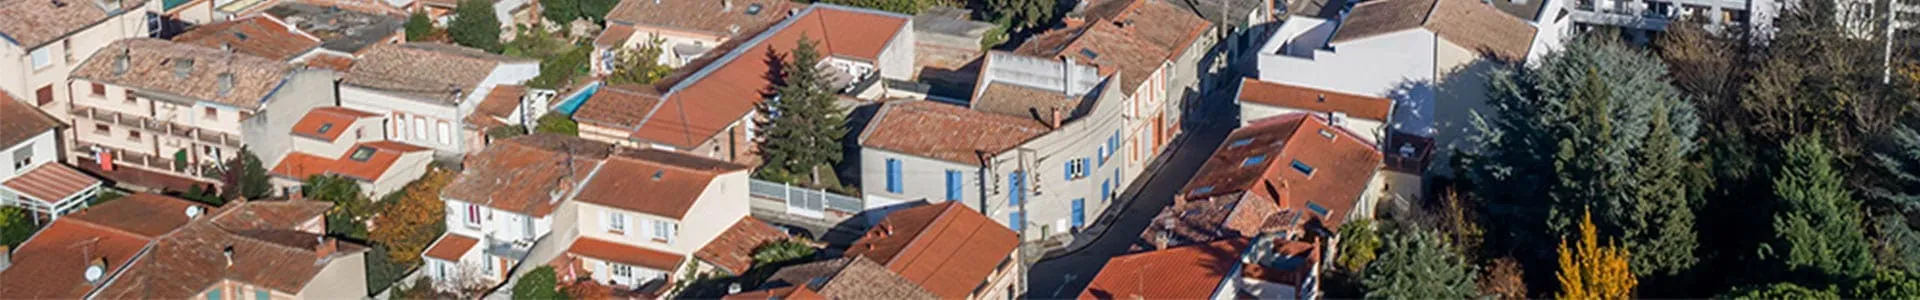 Vue aérienne du quartier autour de la résidence L'Écrin de Martin